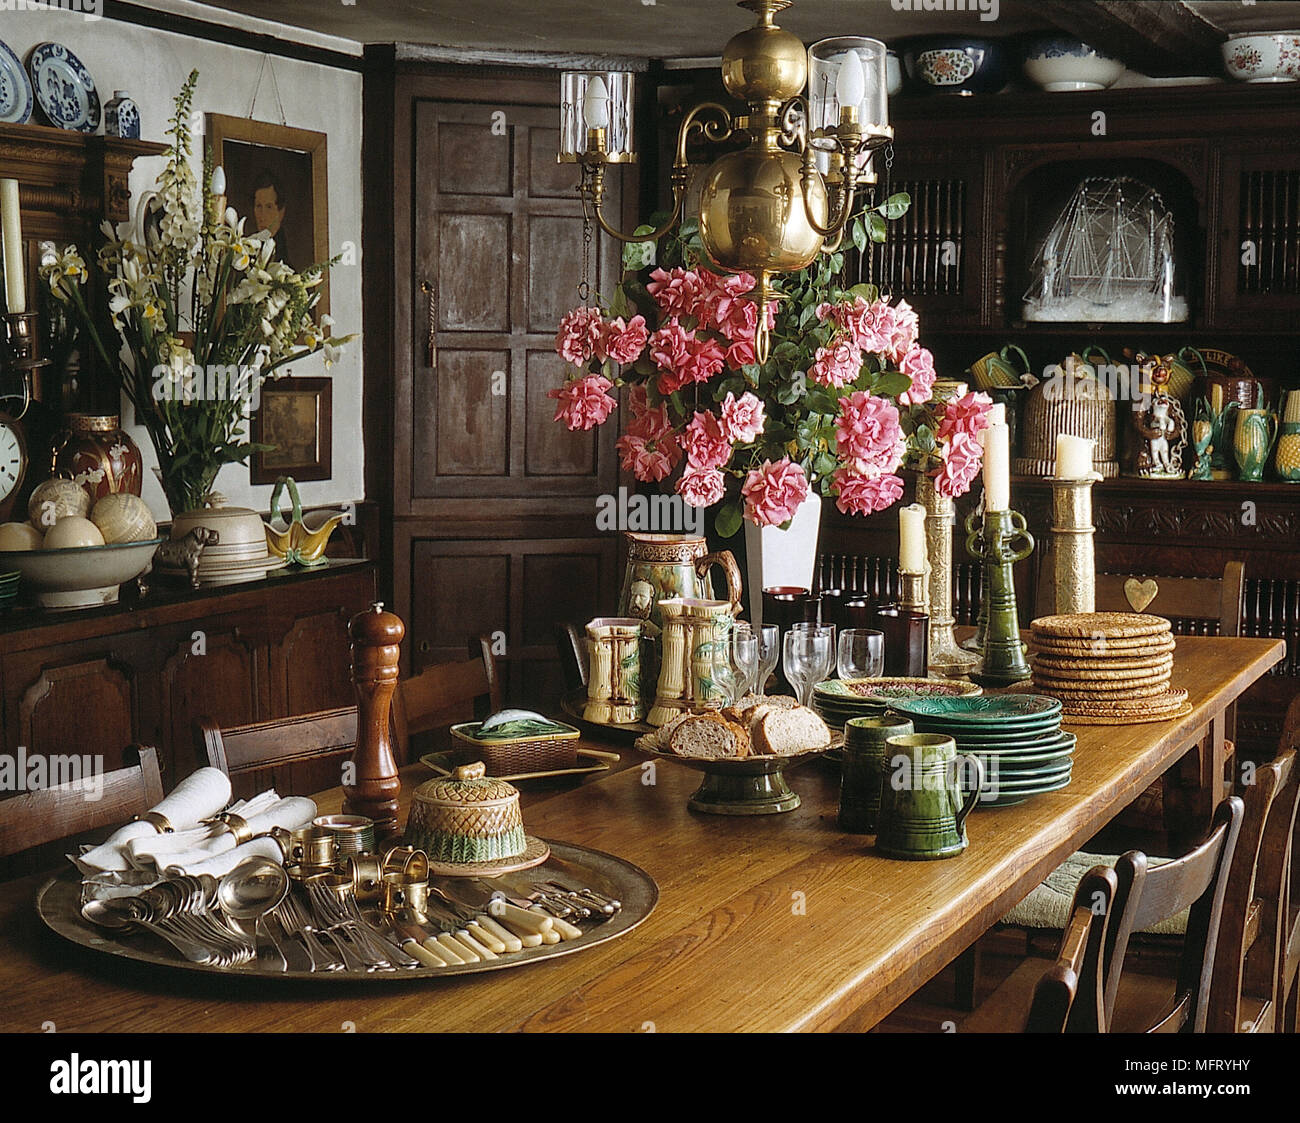 La sala da pranzo in stile vittoriano di cenere paese tavolo da pranzo sedie le rose rosa in vaso piatti e posate argenteria vassoio d'argento muri con pannelli in legno carenatura Foto Stock